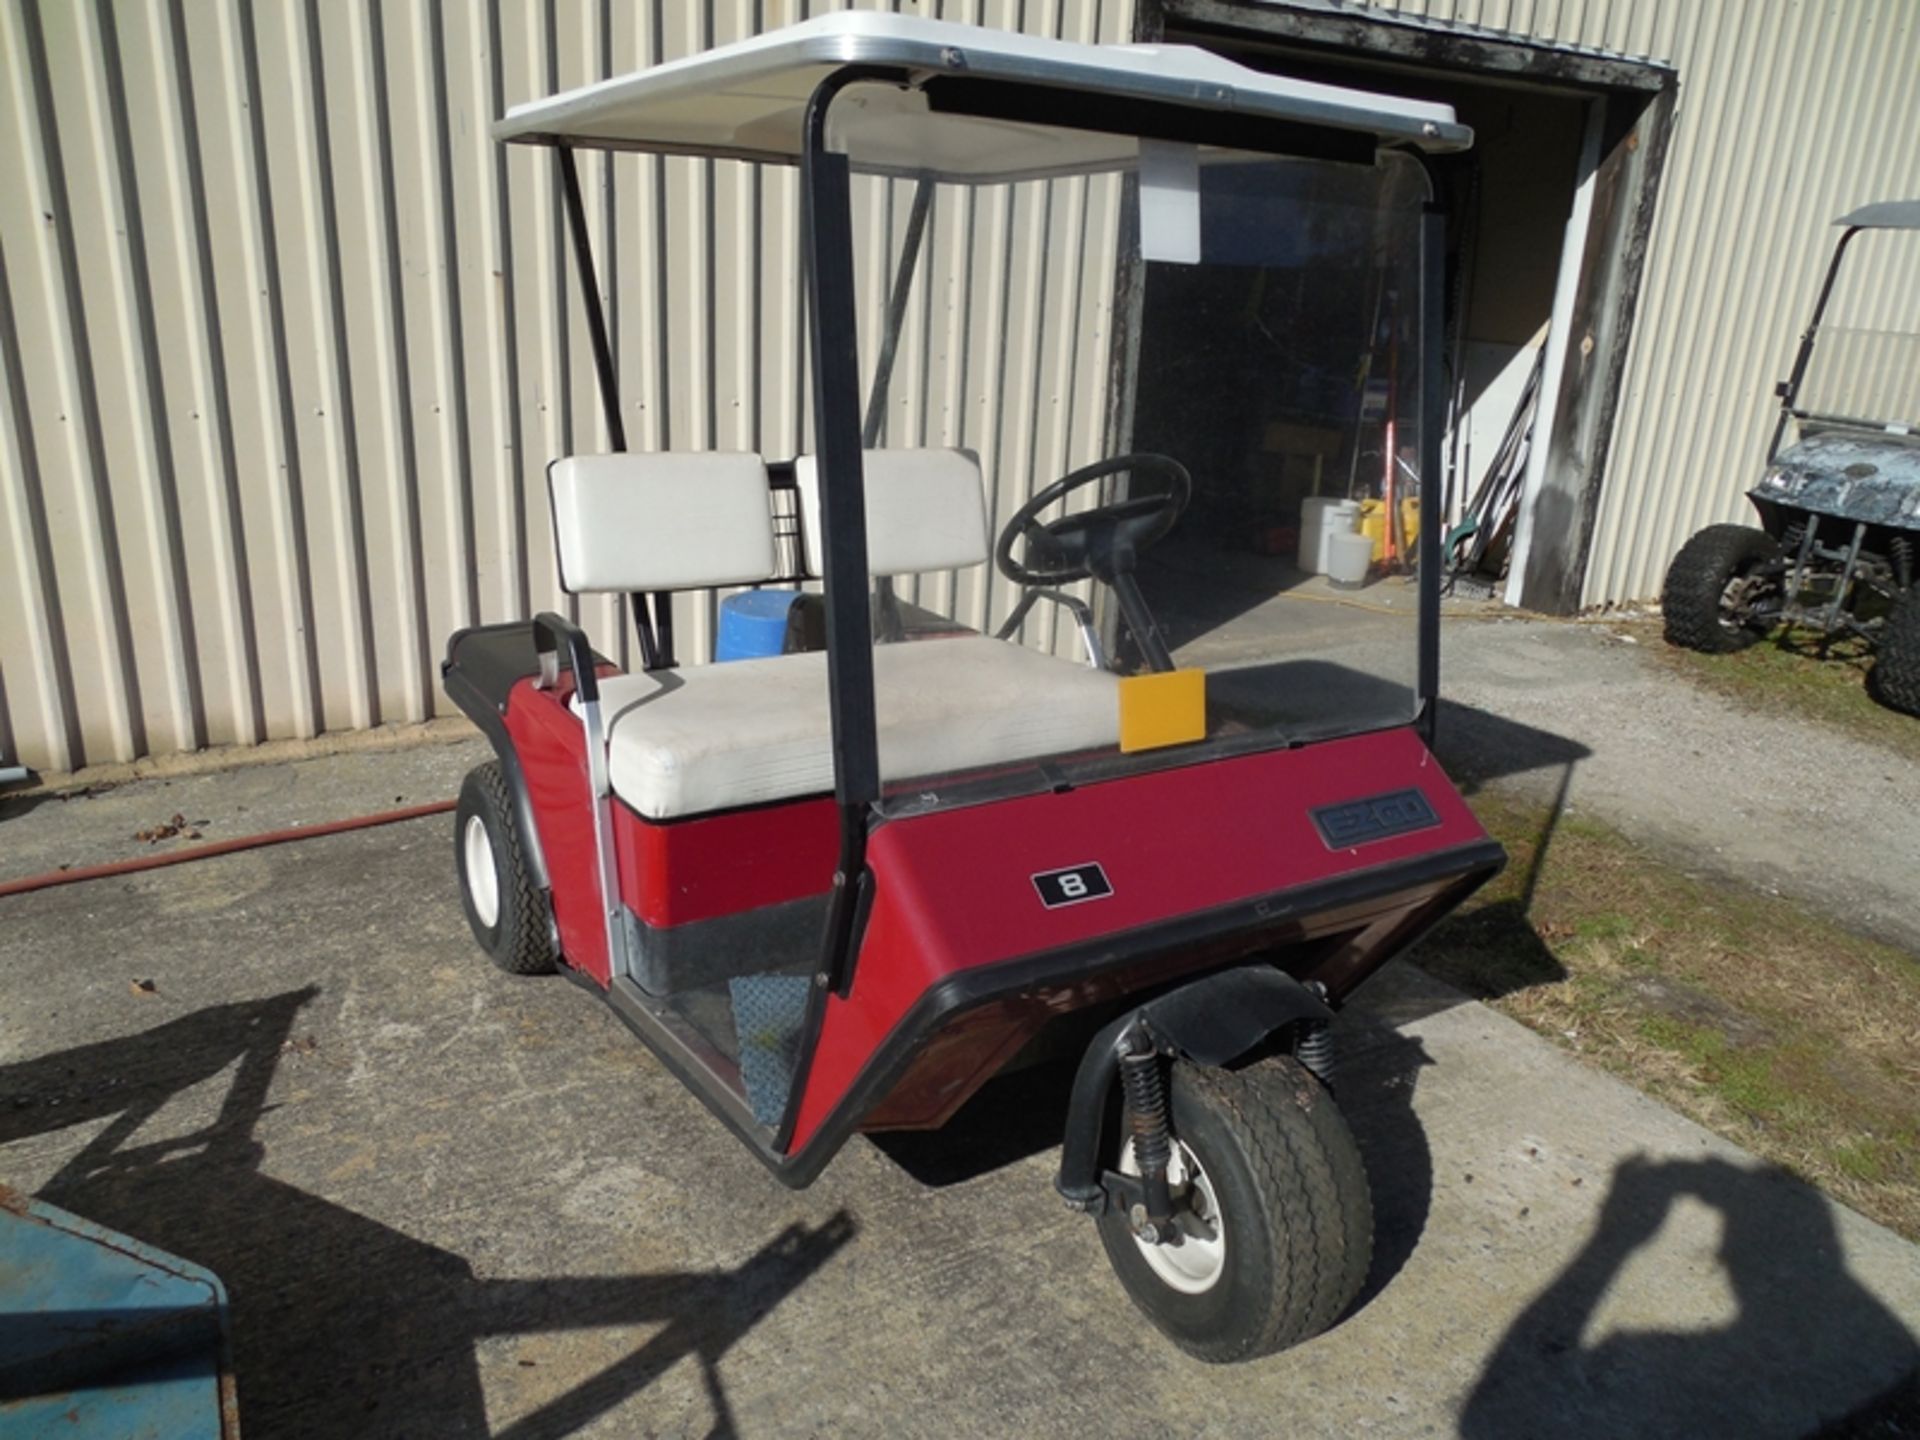 EZ Go 3 wheel golf cart not running